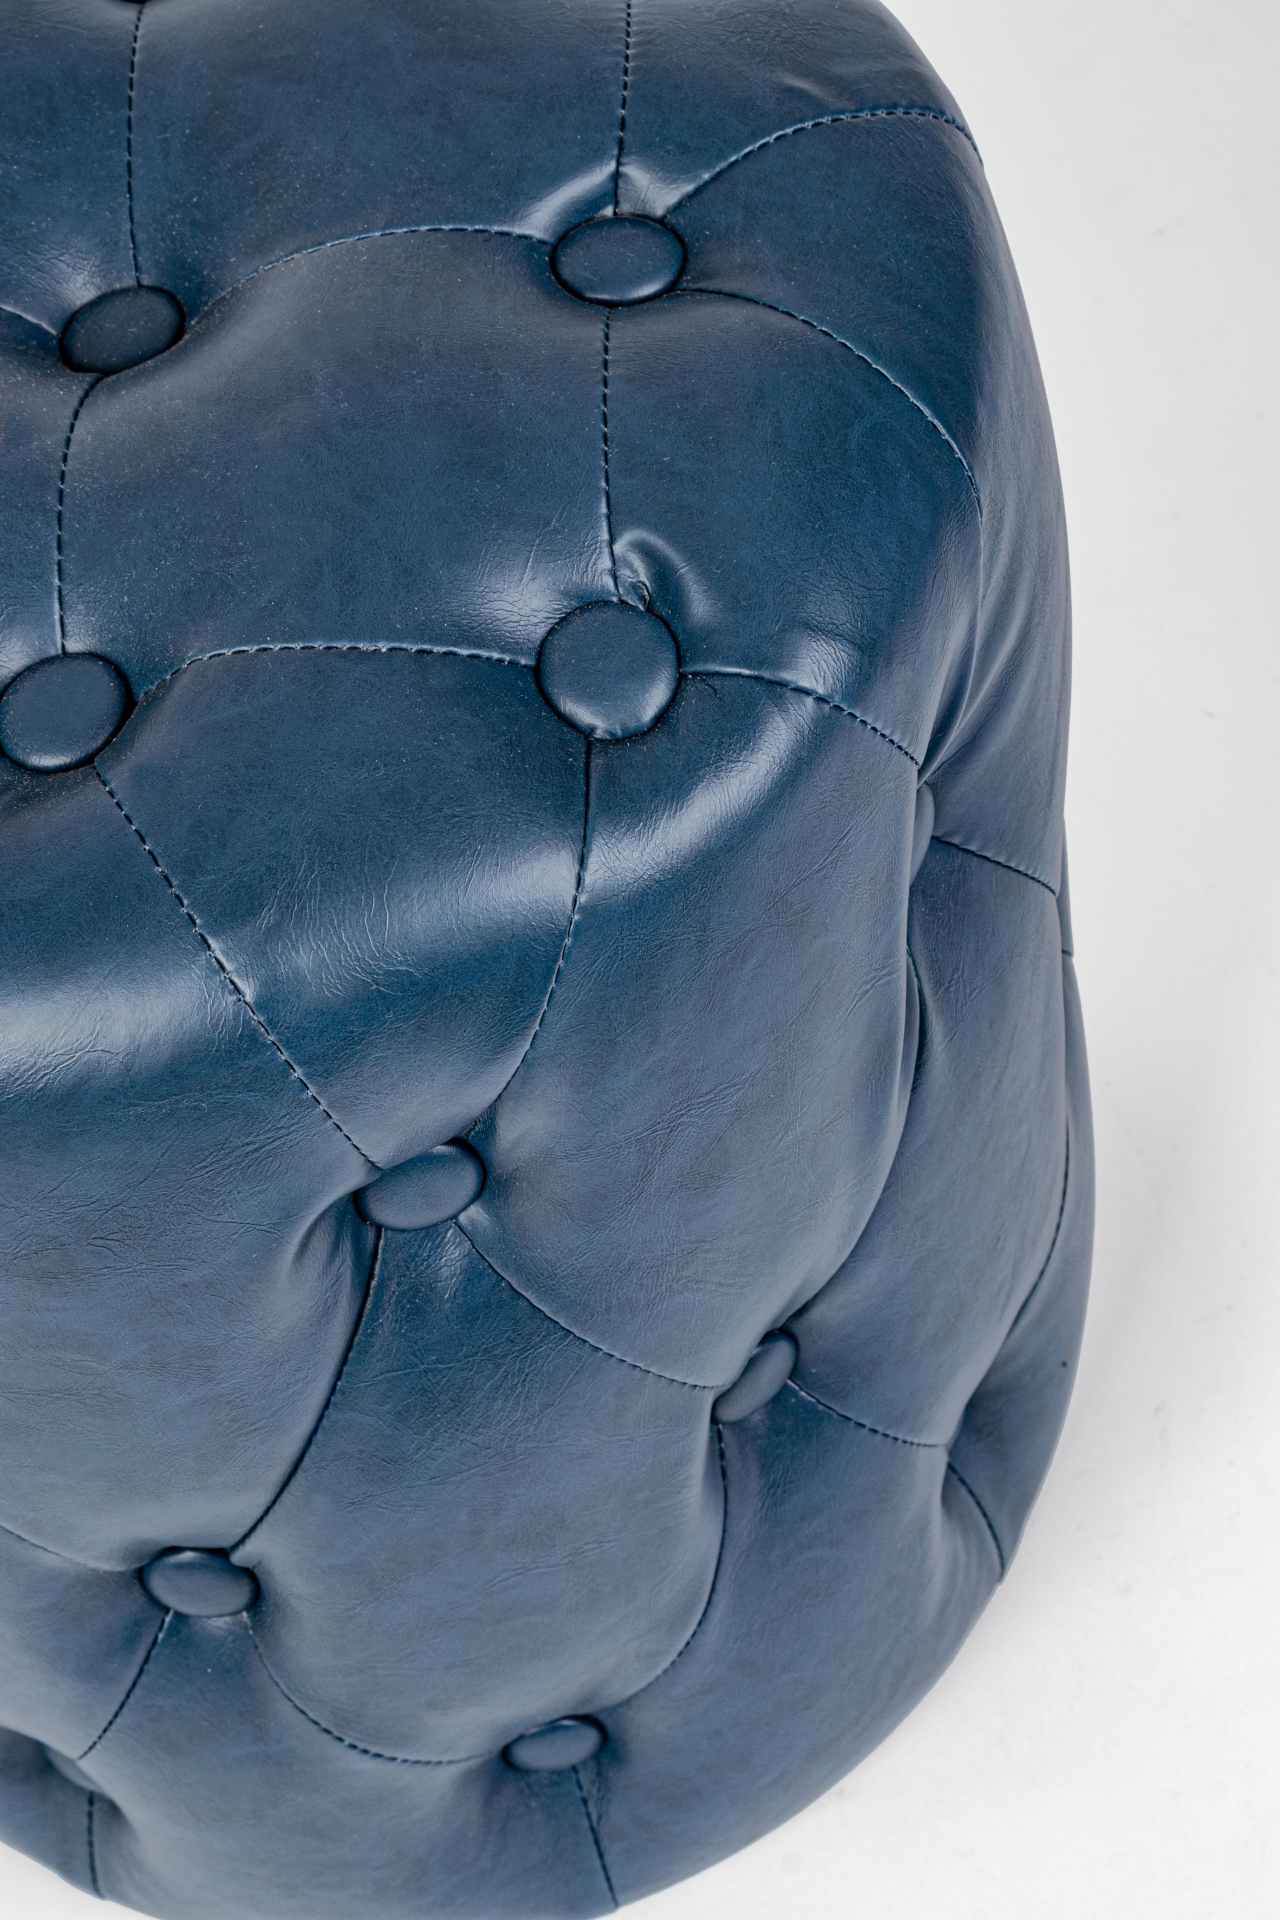 Der Pouf Batilda überzeugt mit seinem klassischen Design. Gefertigt wurde er aus Kunstleder in Chesterfiel-Optik, welches einen blauen Farbton besitzt. Das Gestell ist aus Kiefernholz. Der Durchmesser beträgt 34 cm.